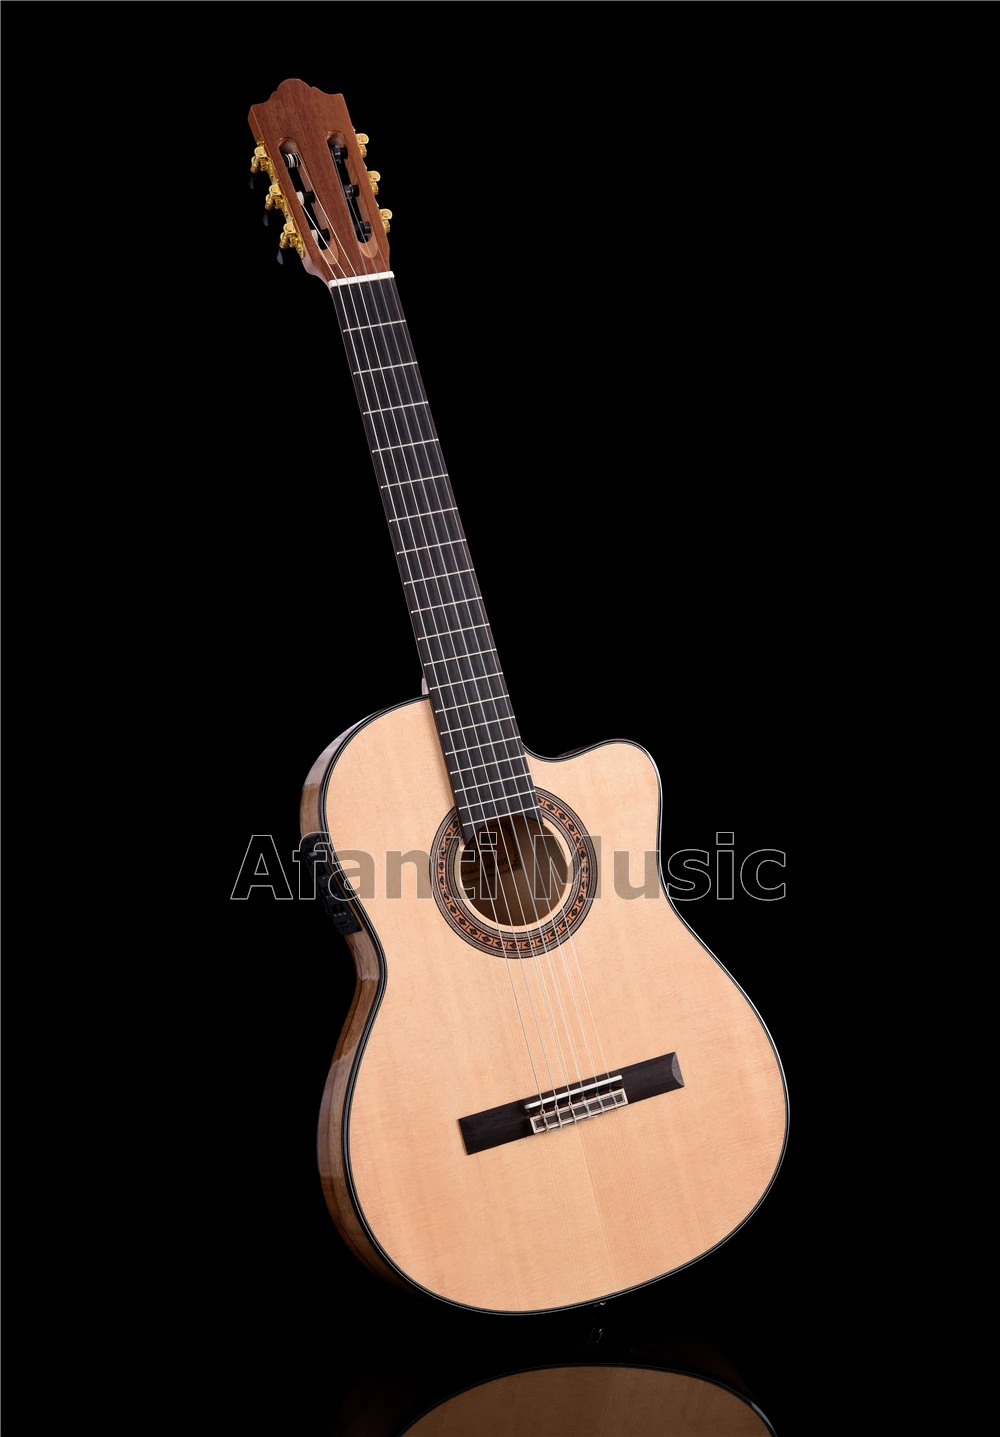 Afanti музыка 39 дюймов Твердая ель Топ Классическая гитара с эквалайзером(ACL-1202